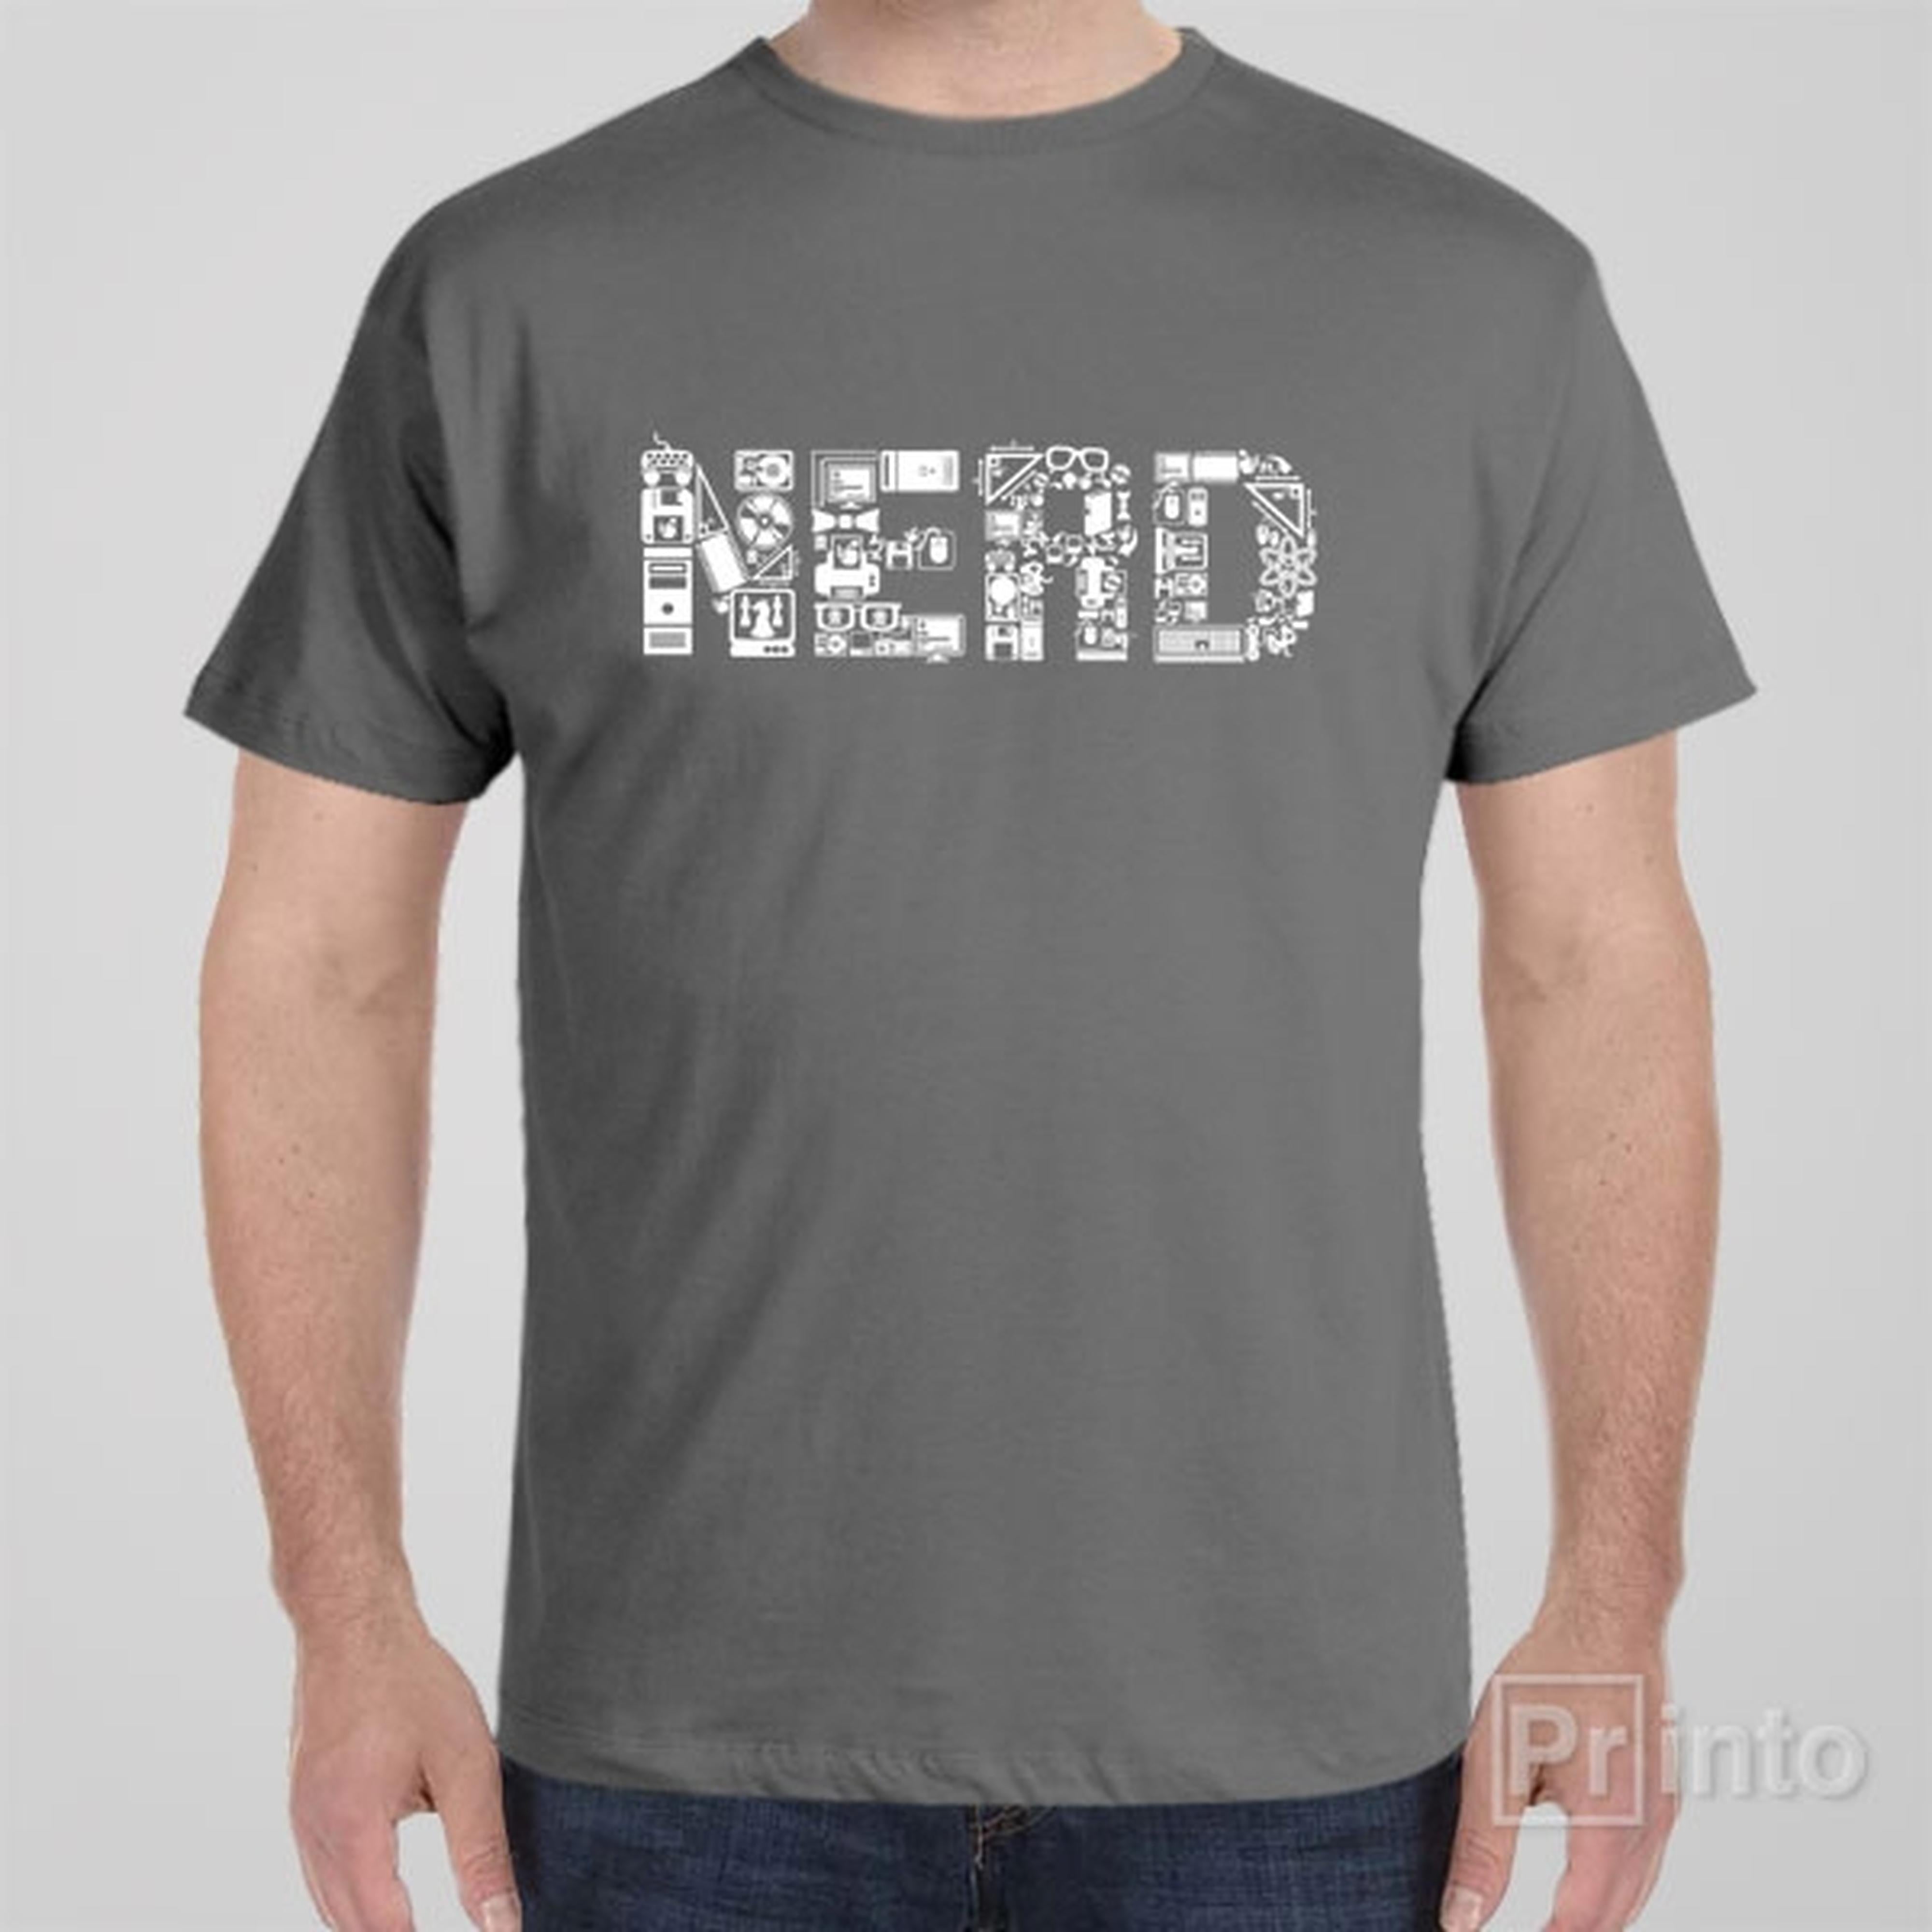 nerd-t-shirt